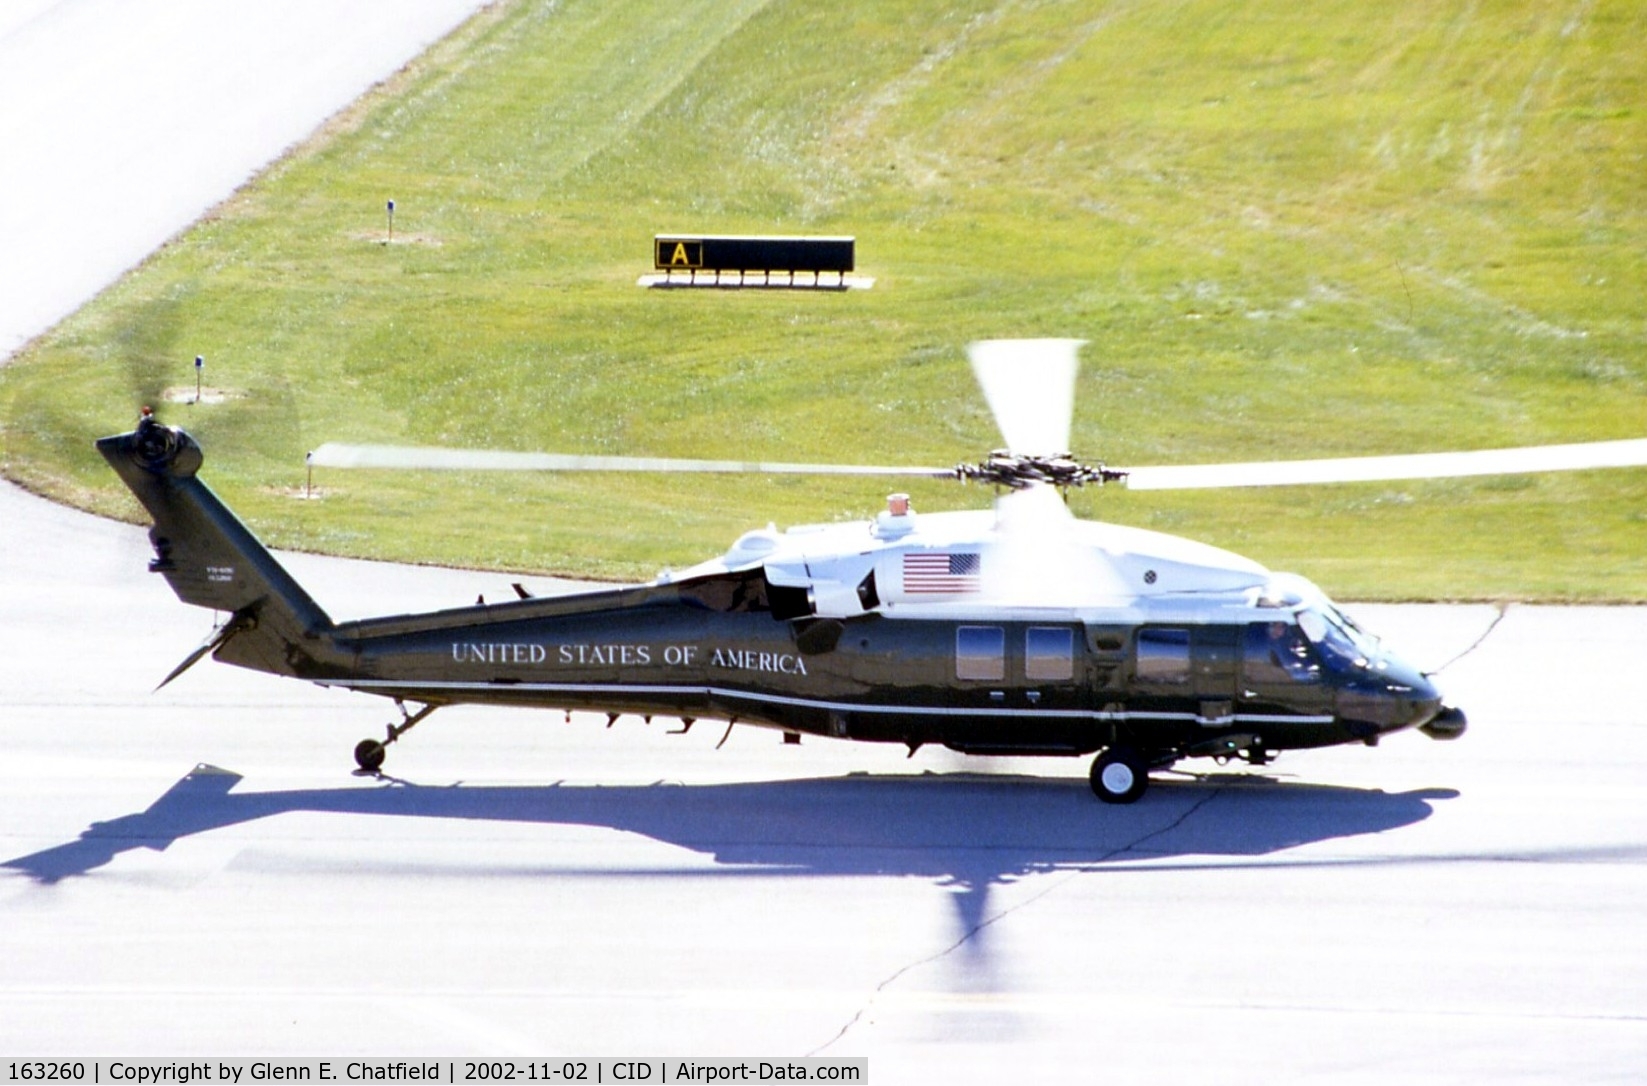 163260, 1988 Sikorsky VH-60N Whitehawk C/N 70-1078, Marine One in for a presidential visit